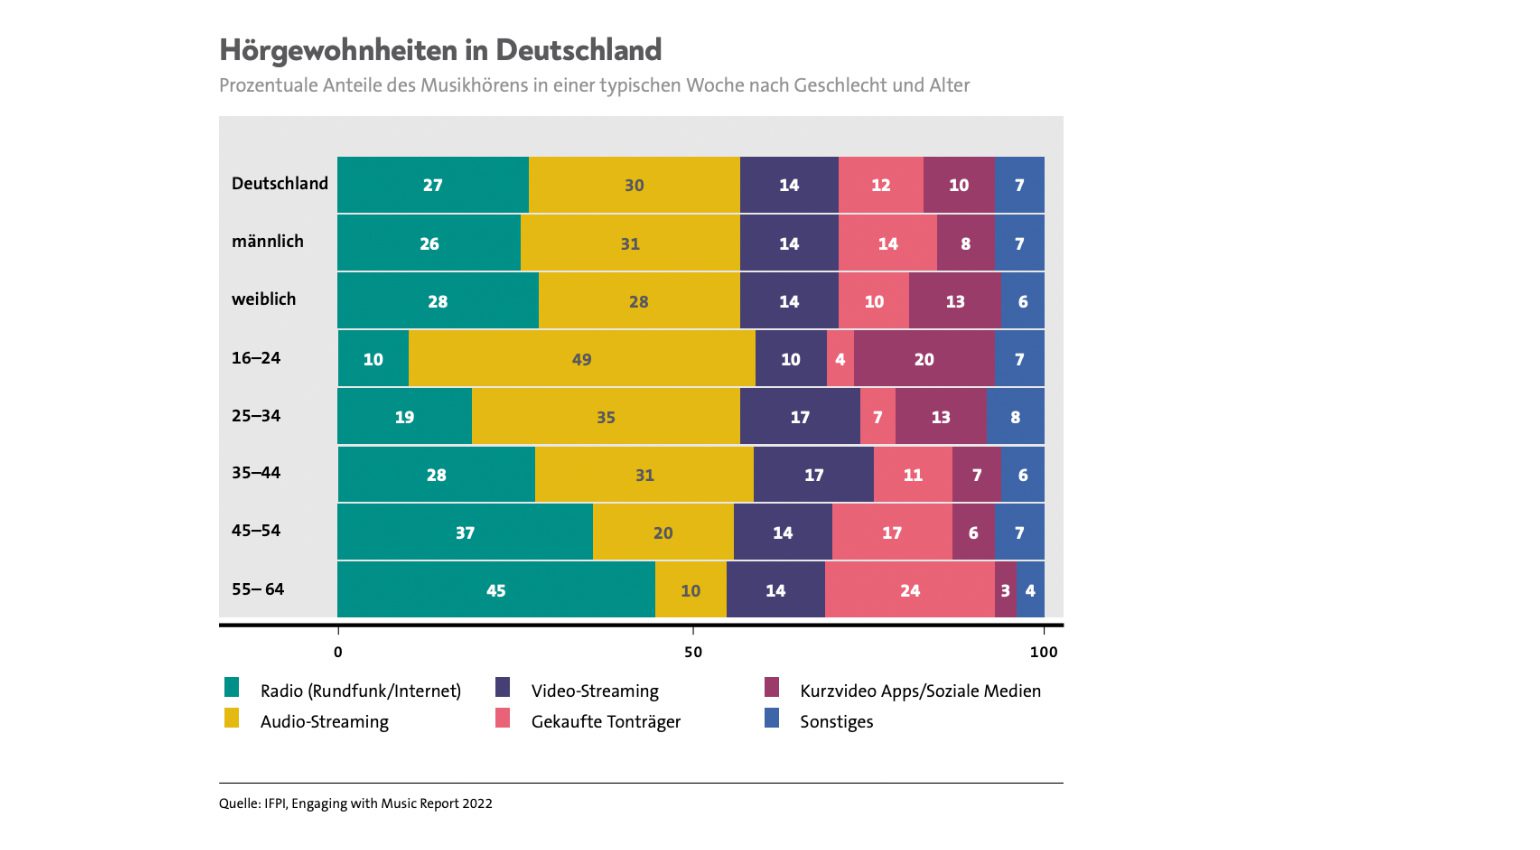 Hörgewohnheiten in Deutschland 2022